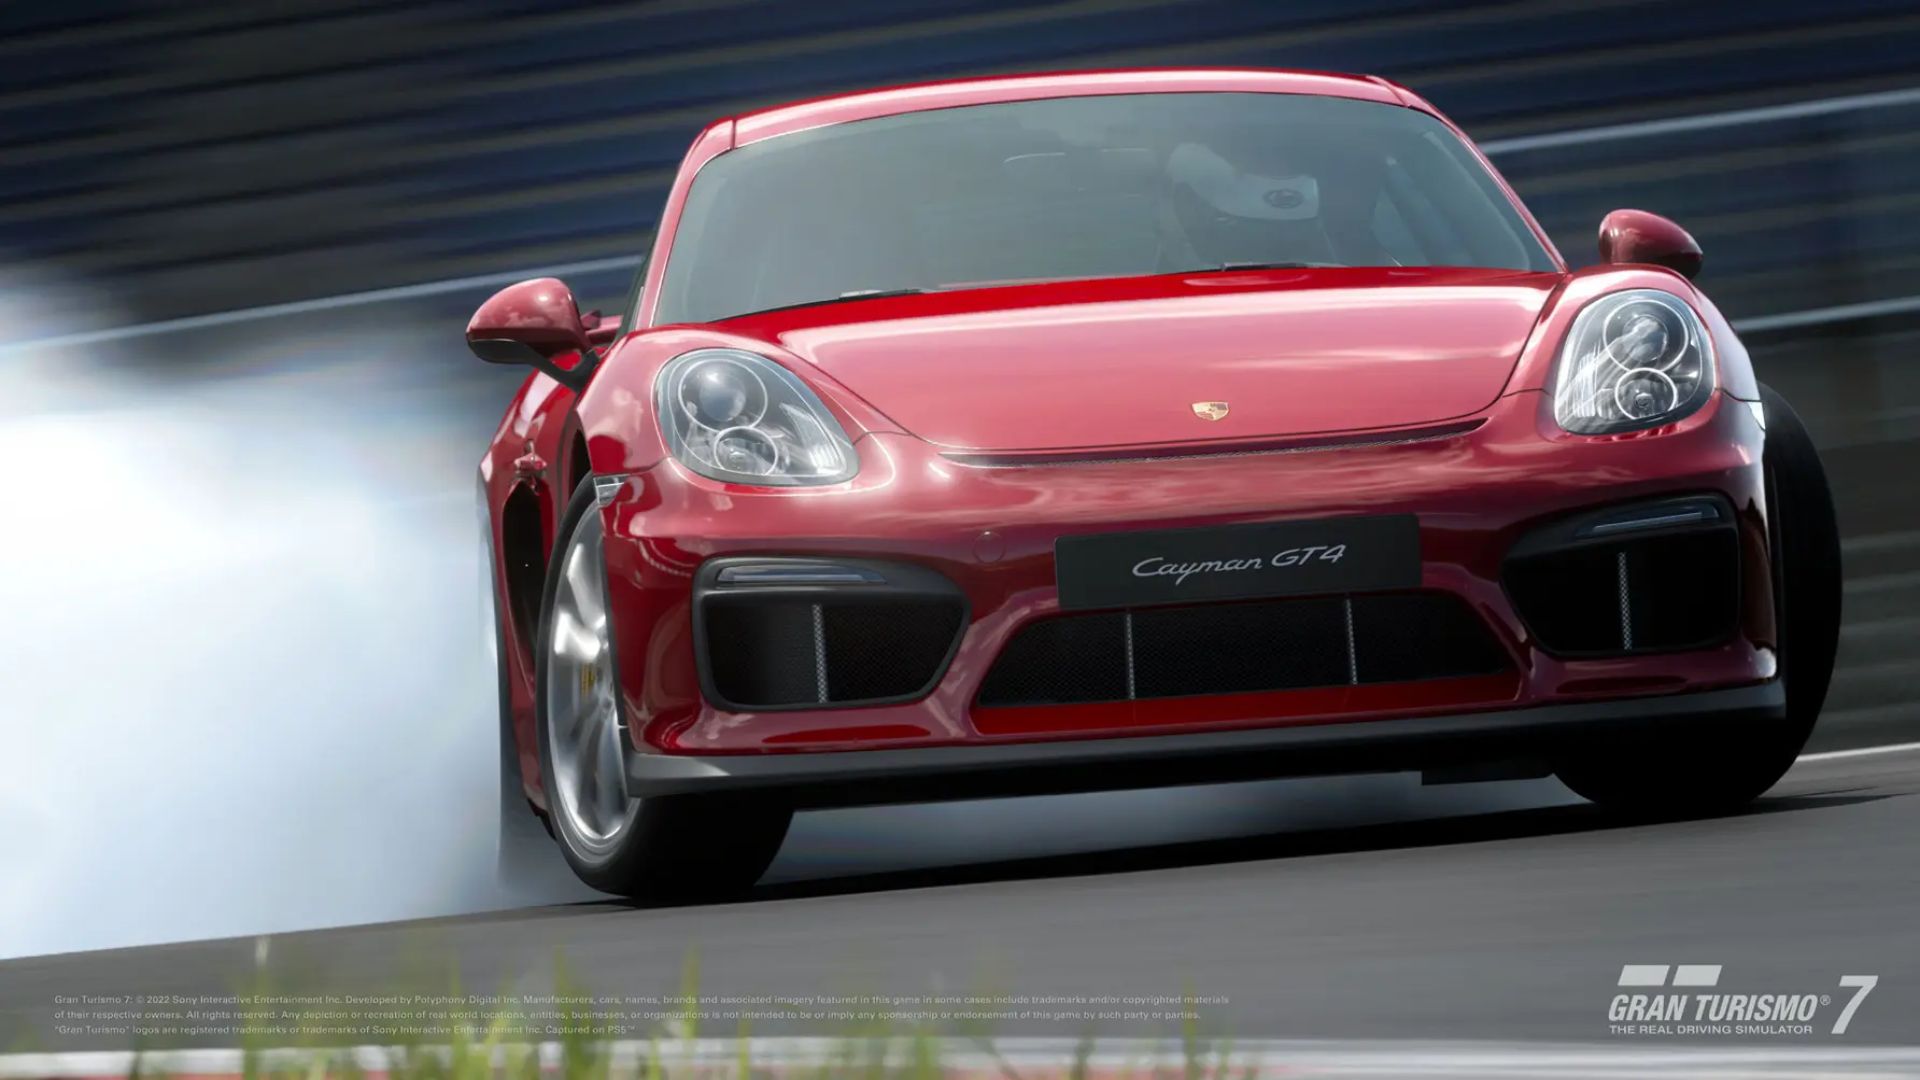 What Porsche cars are in Gran Turismo 7?